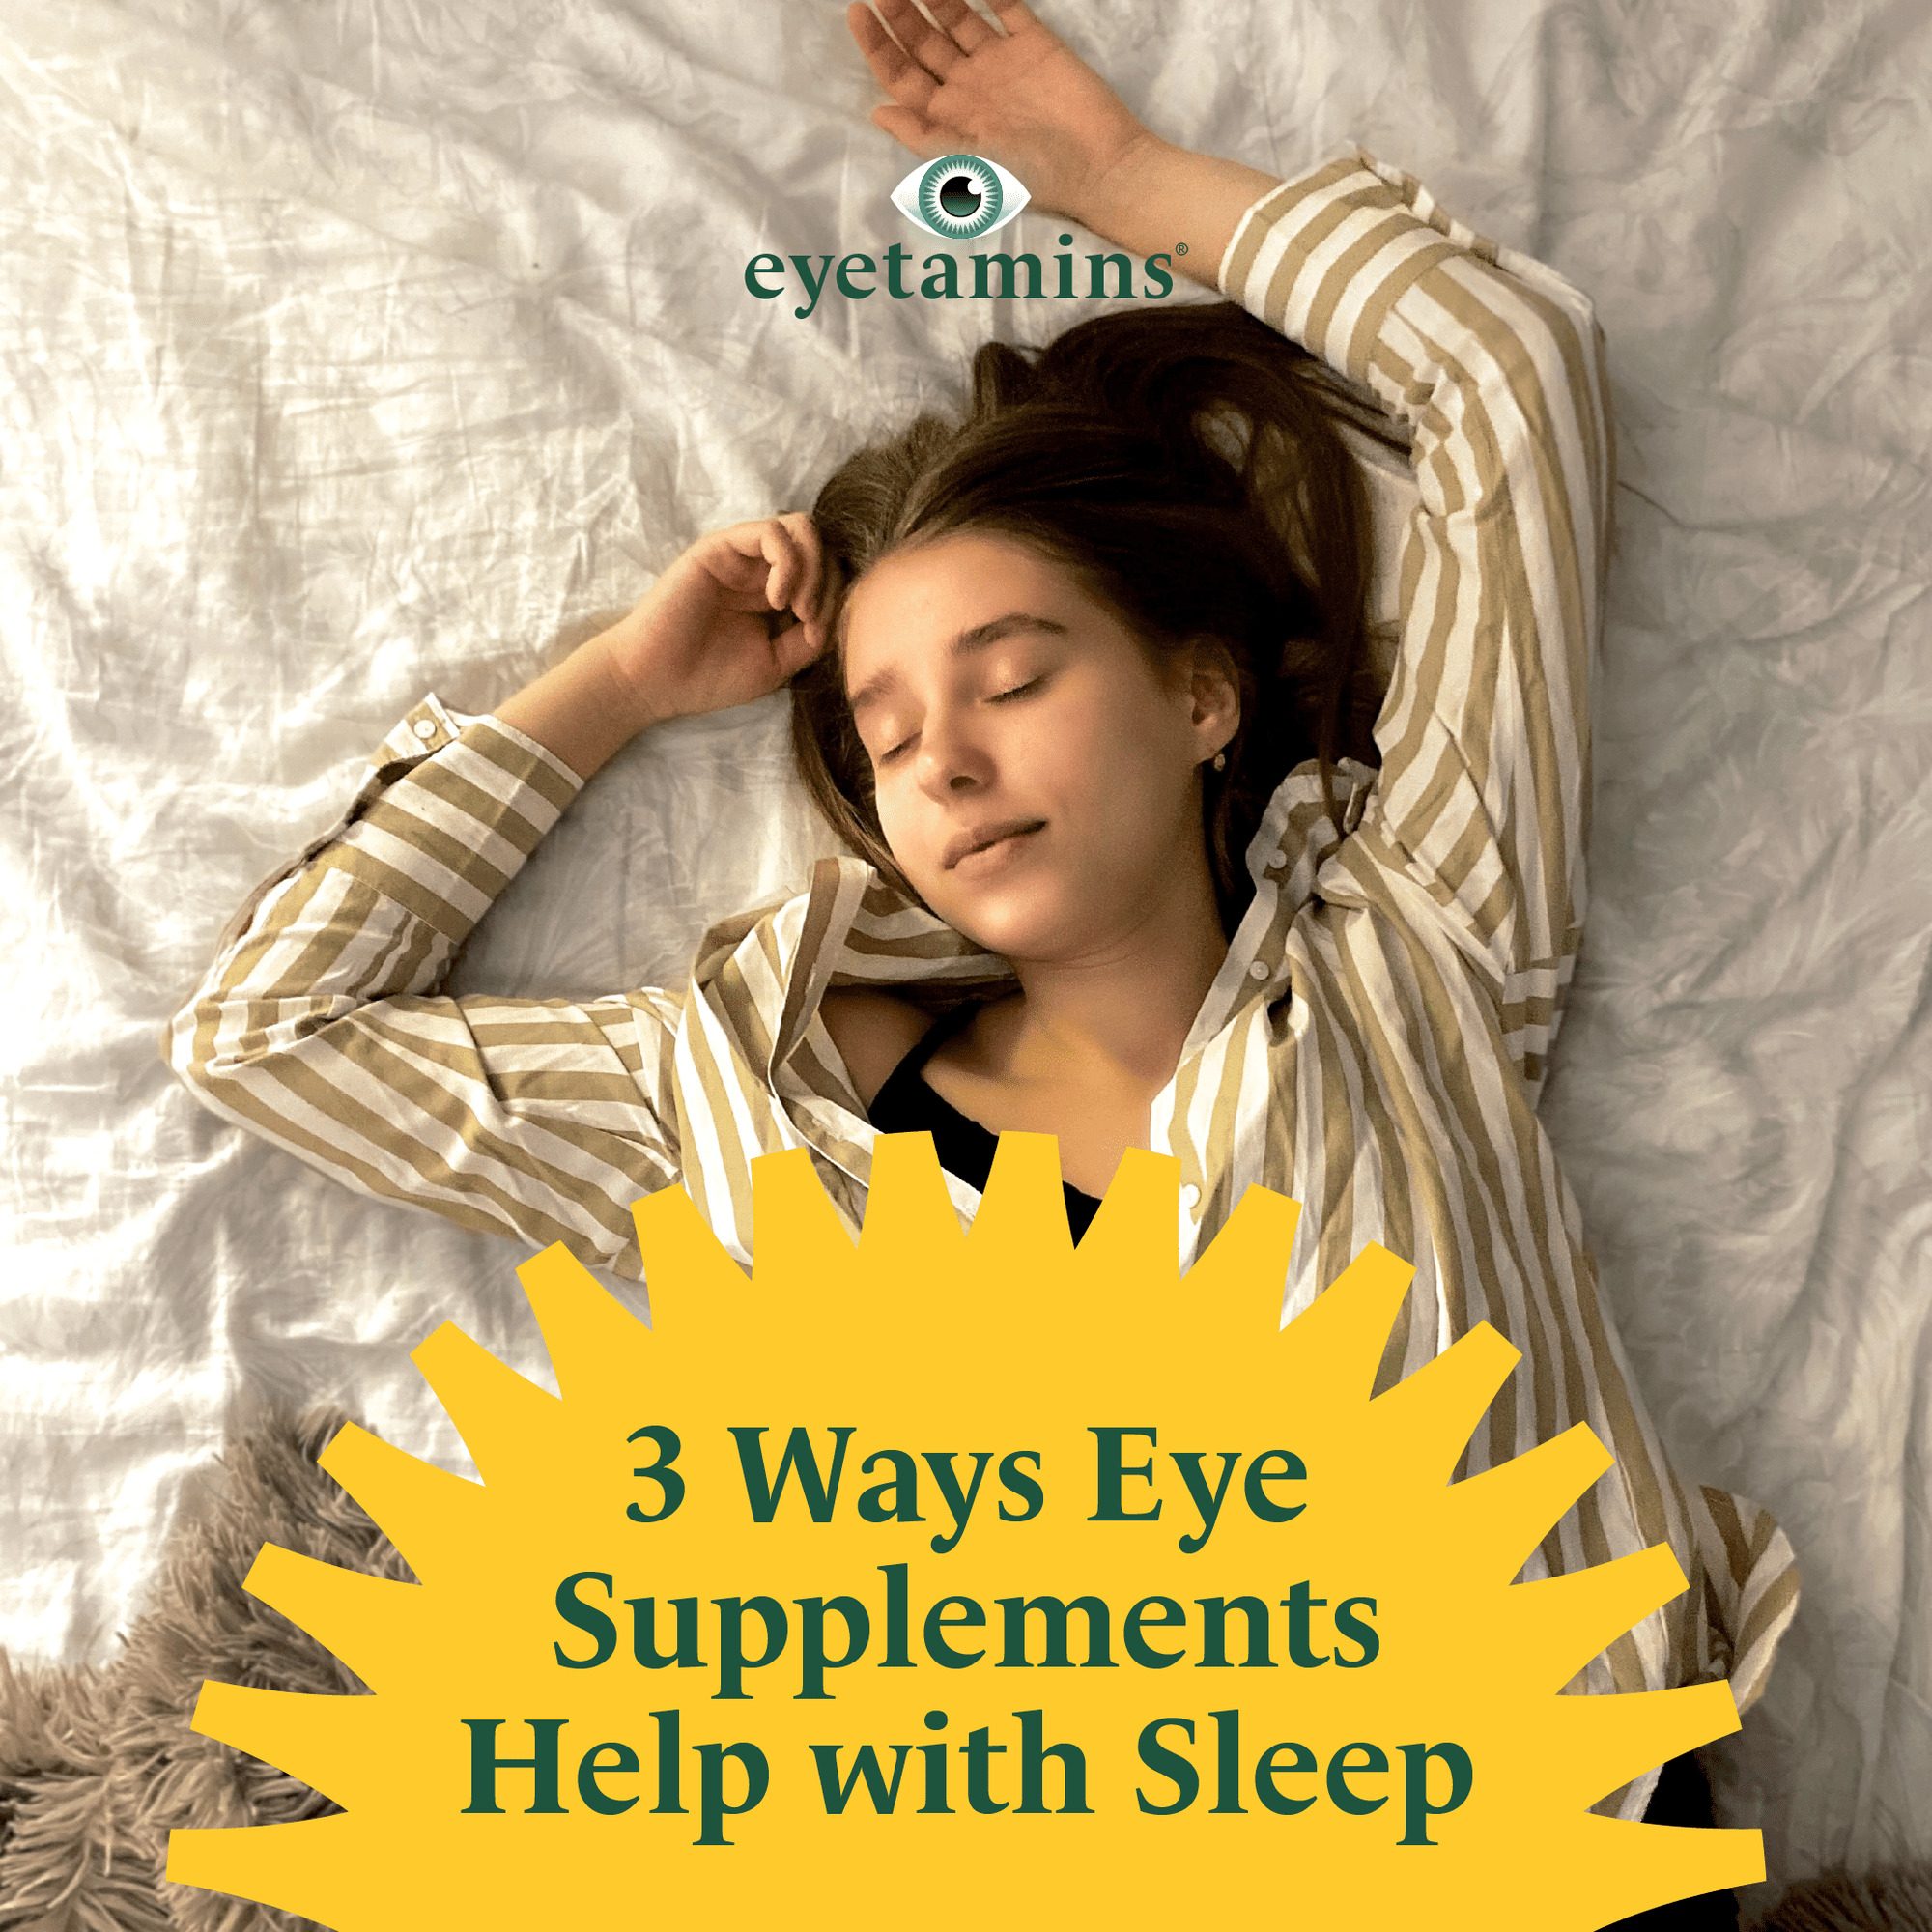 Eyetamins - 3 Ways Eye Supplements Help with Sleep